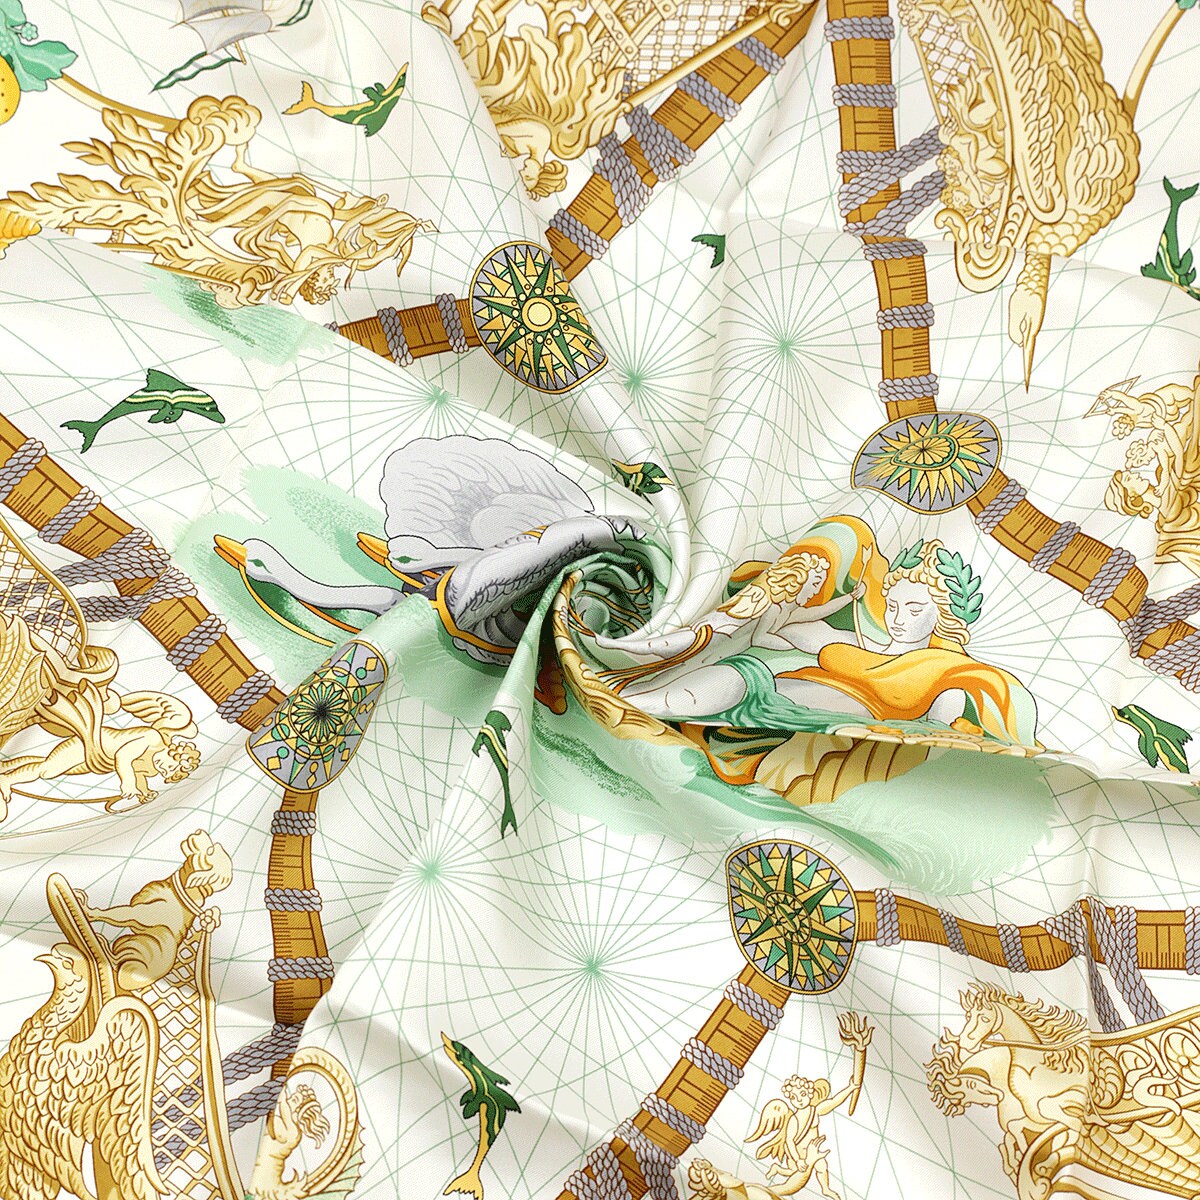 Hermes Scarf "Balade Oceane" by Julia Abadie 90cm Silk